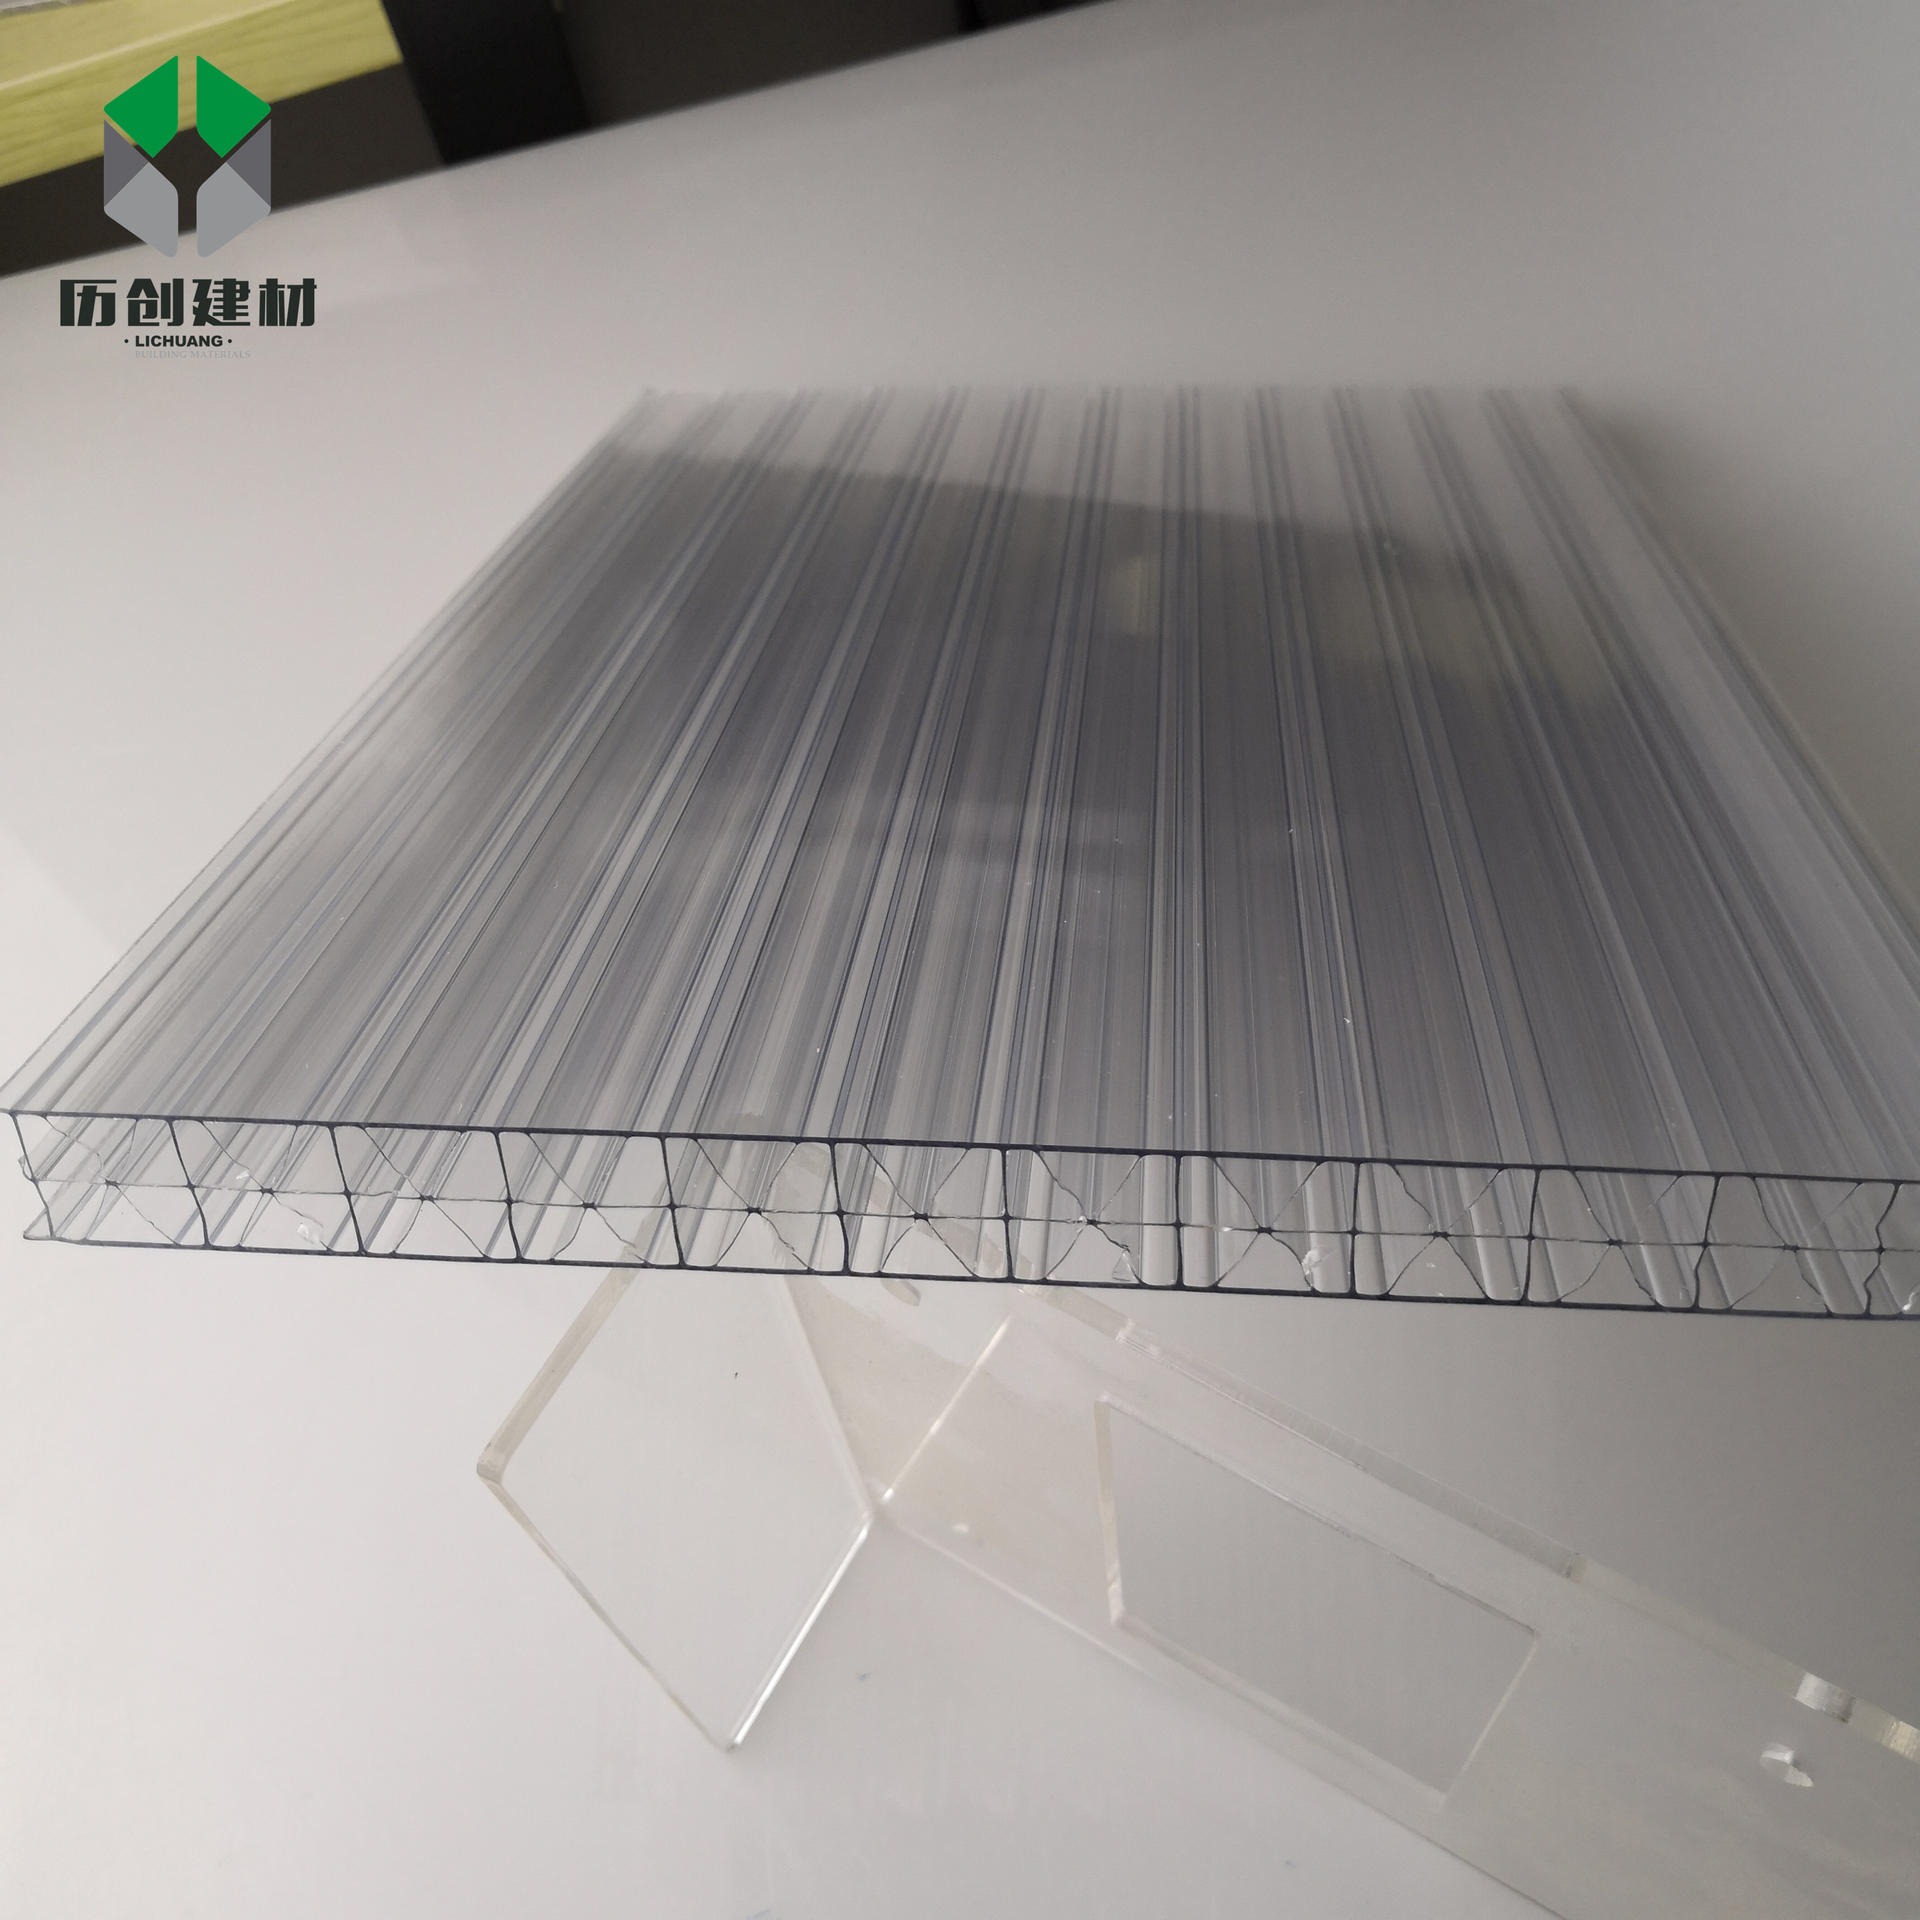 大棚透明阳光板 PC四层米字格板14mm工程中空板聚碳酸酯采光阳光板历创定制